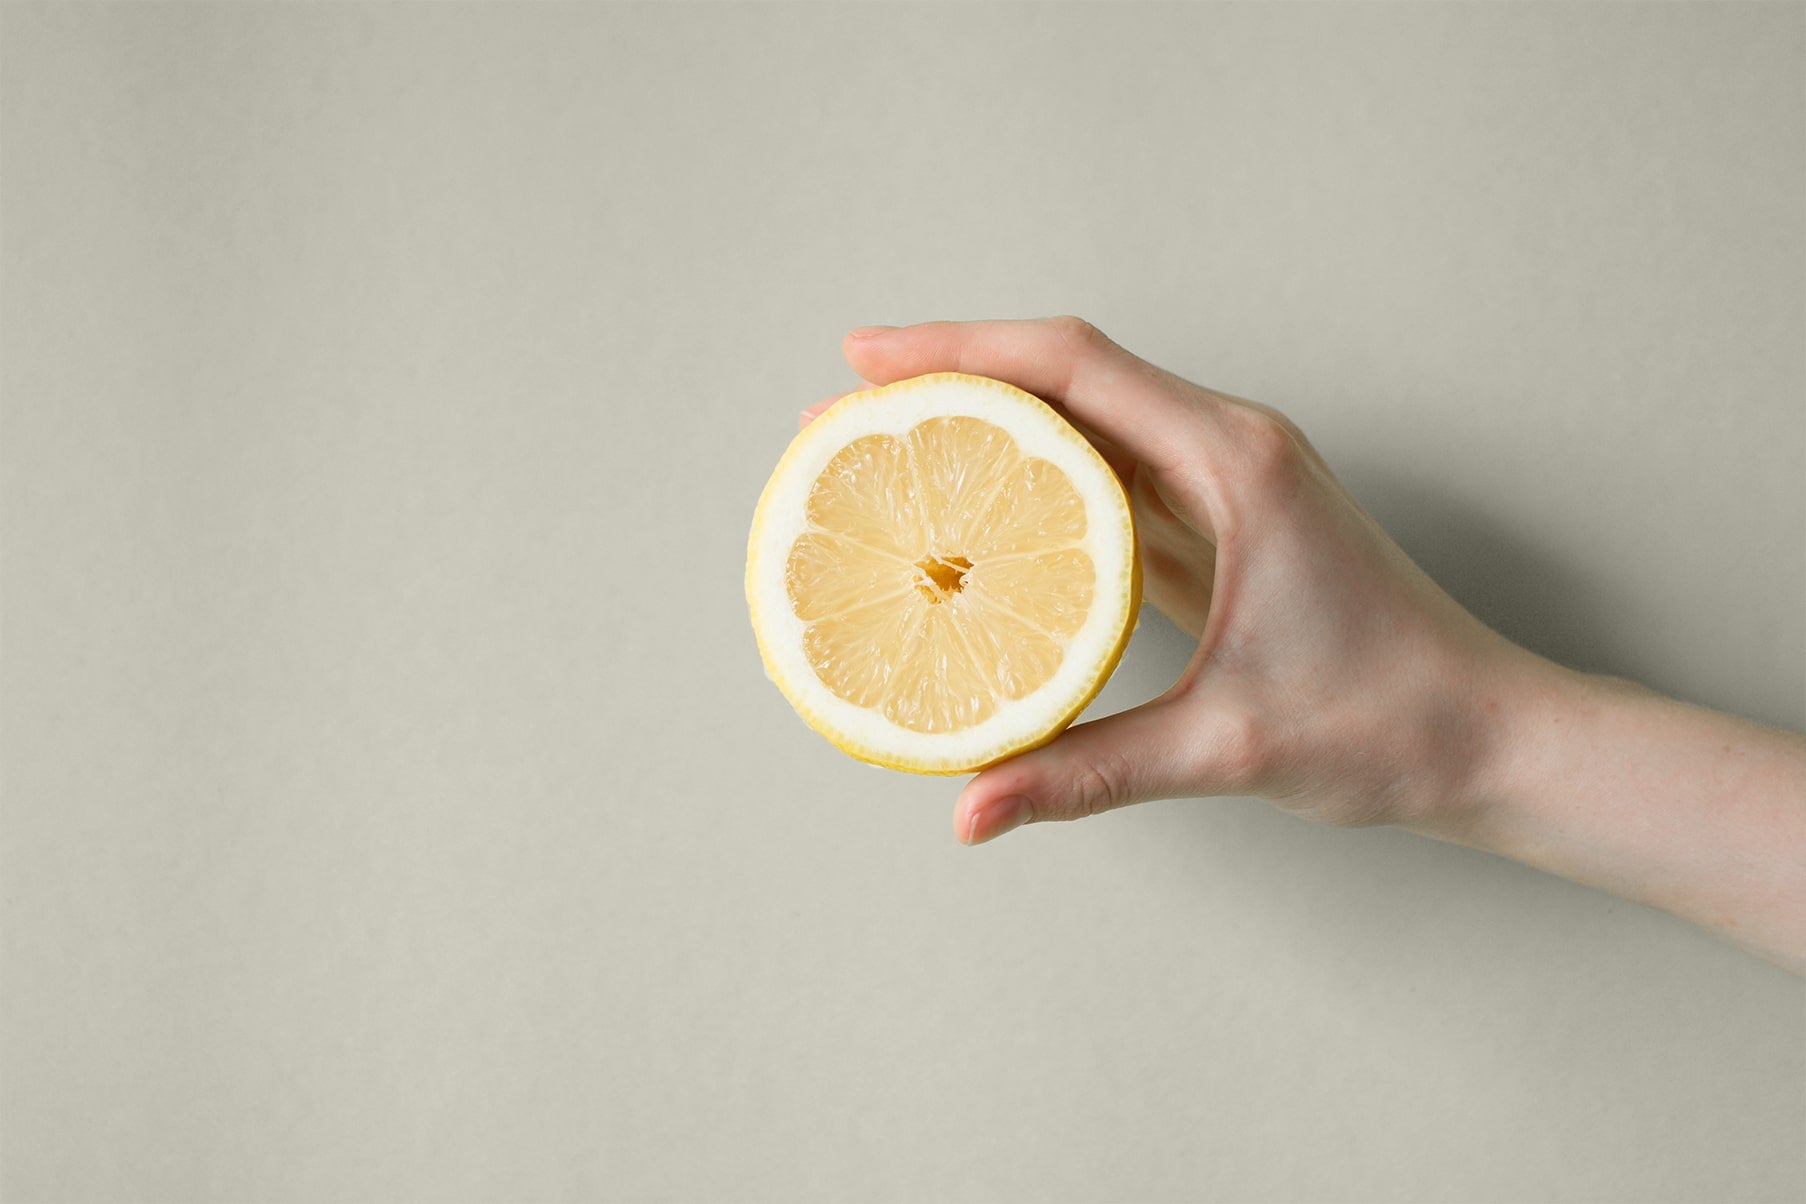 Zitrone in der Hand vor einer beigenen Wand